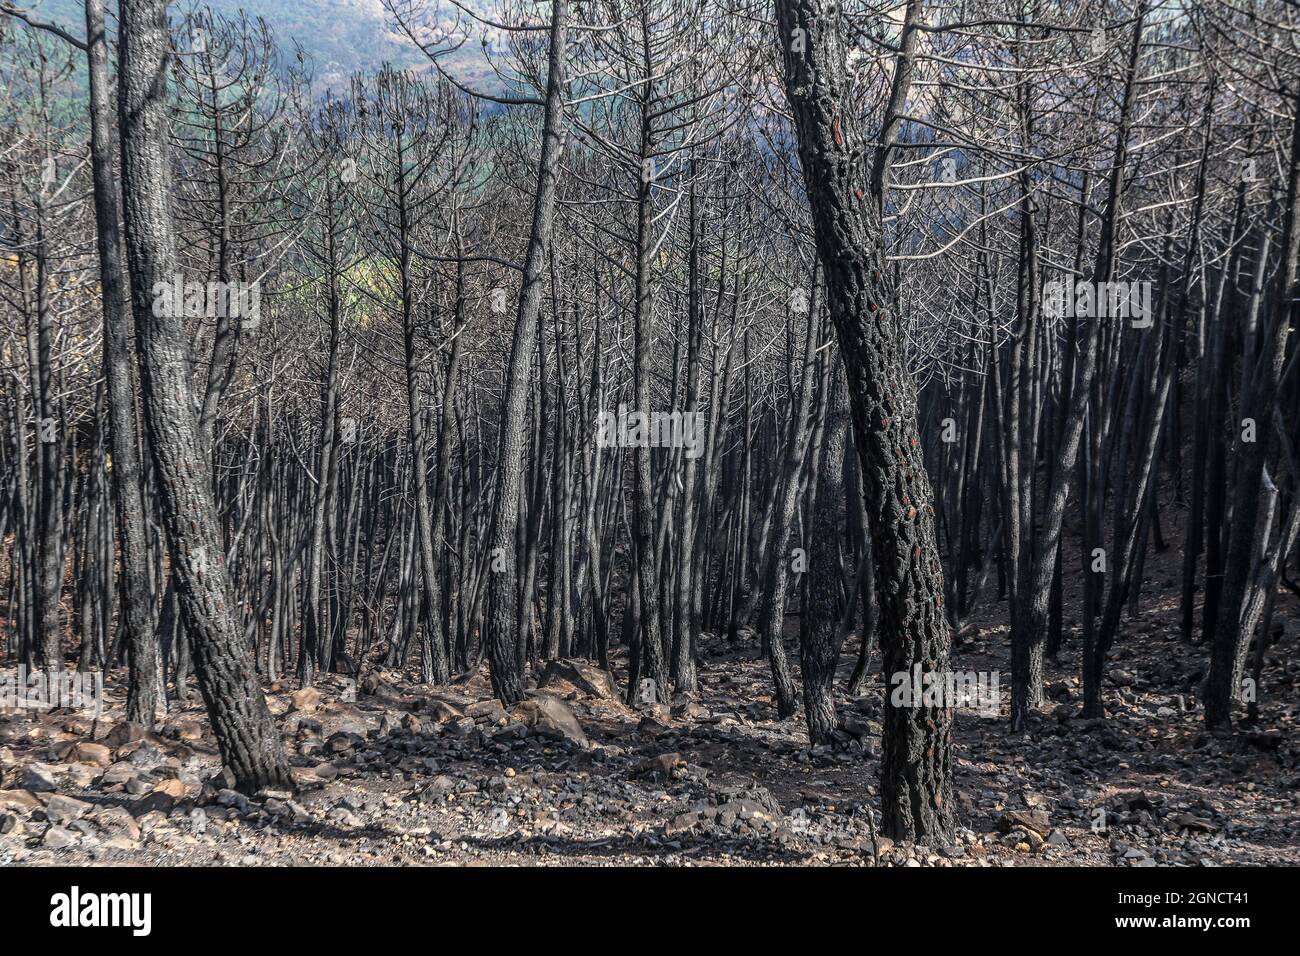 Malaga, Espagne. 24 septembre 2021. 24 septembre 2021 : 24 septembre 2021 (Estepona, Malaga) l'incendie qui a éclaté en Sierra Bermeja le 8 septembre et est resté incontrôlé jusqu'au jour 14, qui a brûlé environ 10,000 hectares et déplacé plus de 3600 personnes de sept villes, dont six ont été expulsées (Jubrique, Faraján, Júzcar, Alpandeire, Pujerra et Genalguacil), laissé derrière un terrain dévasté. Ce territoire, avec plusieurs sites Natura 2000 affectés, a laissé de nombreuses espèces sauvages désorientées, blessées et sans ressources nutritionnelles. On peut le considérer comme ce feu, le plus grand de l'année en Th Banque D'Images